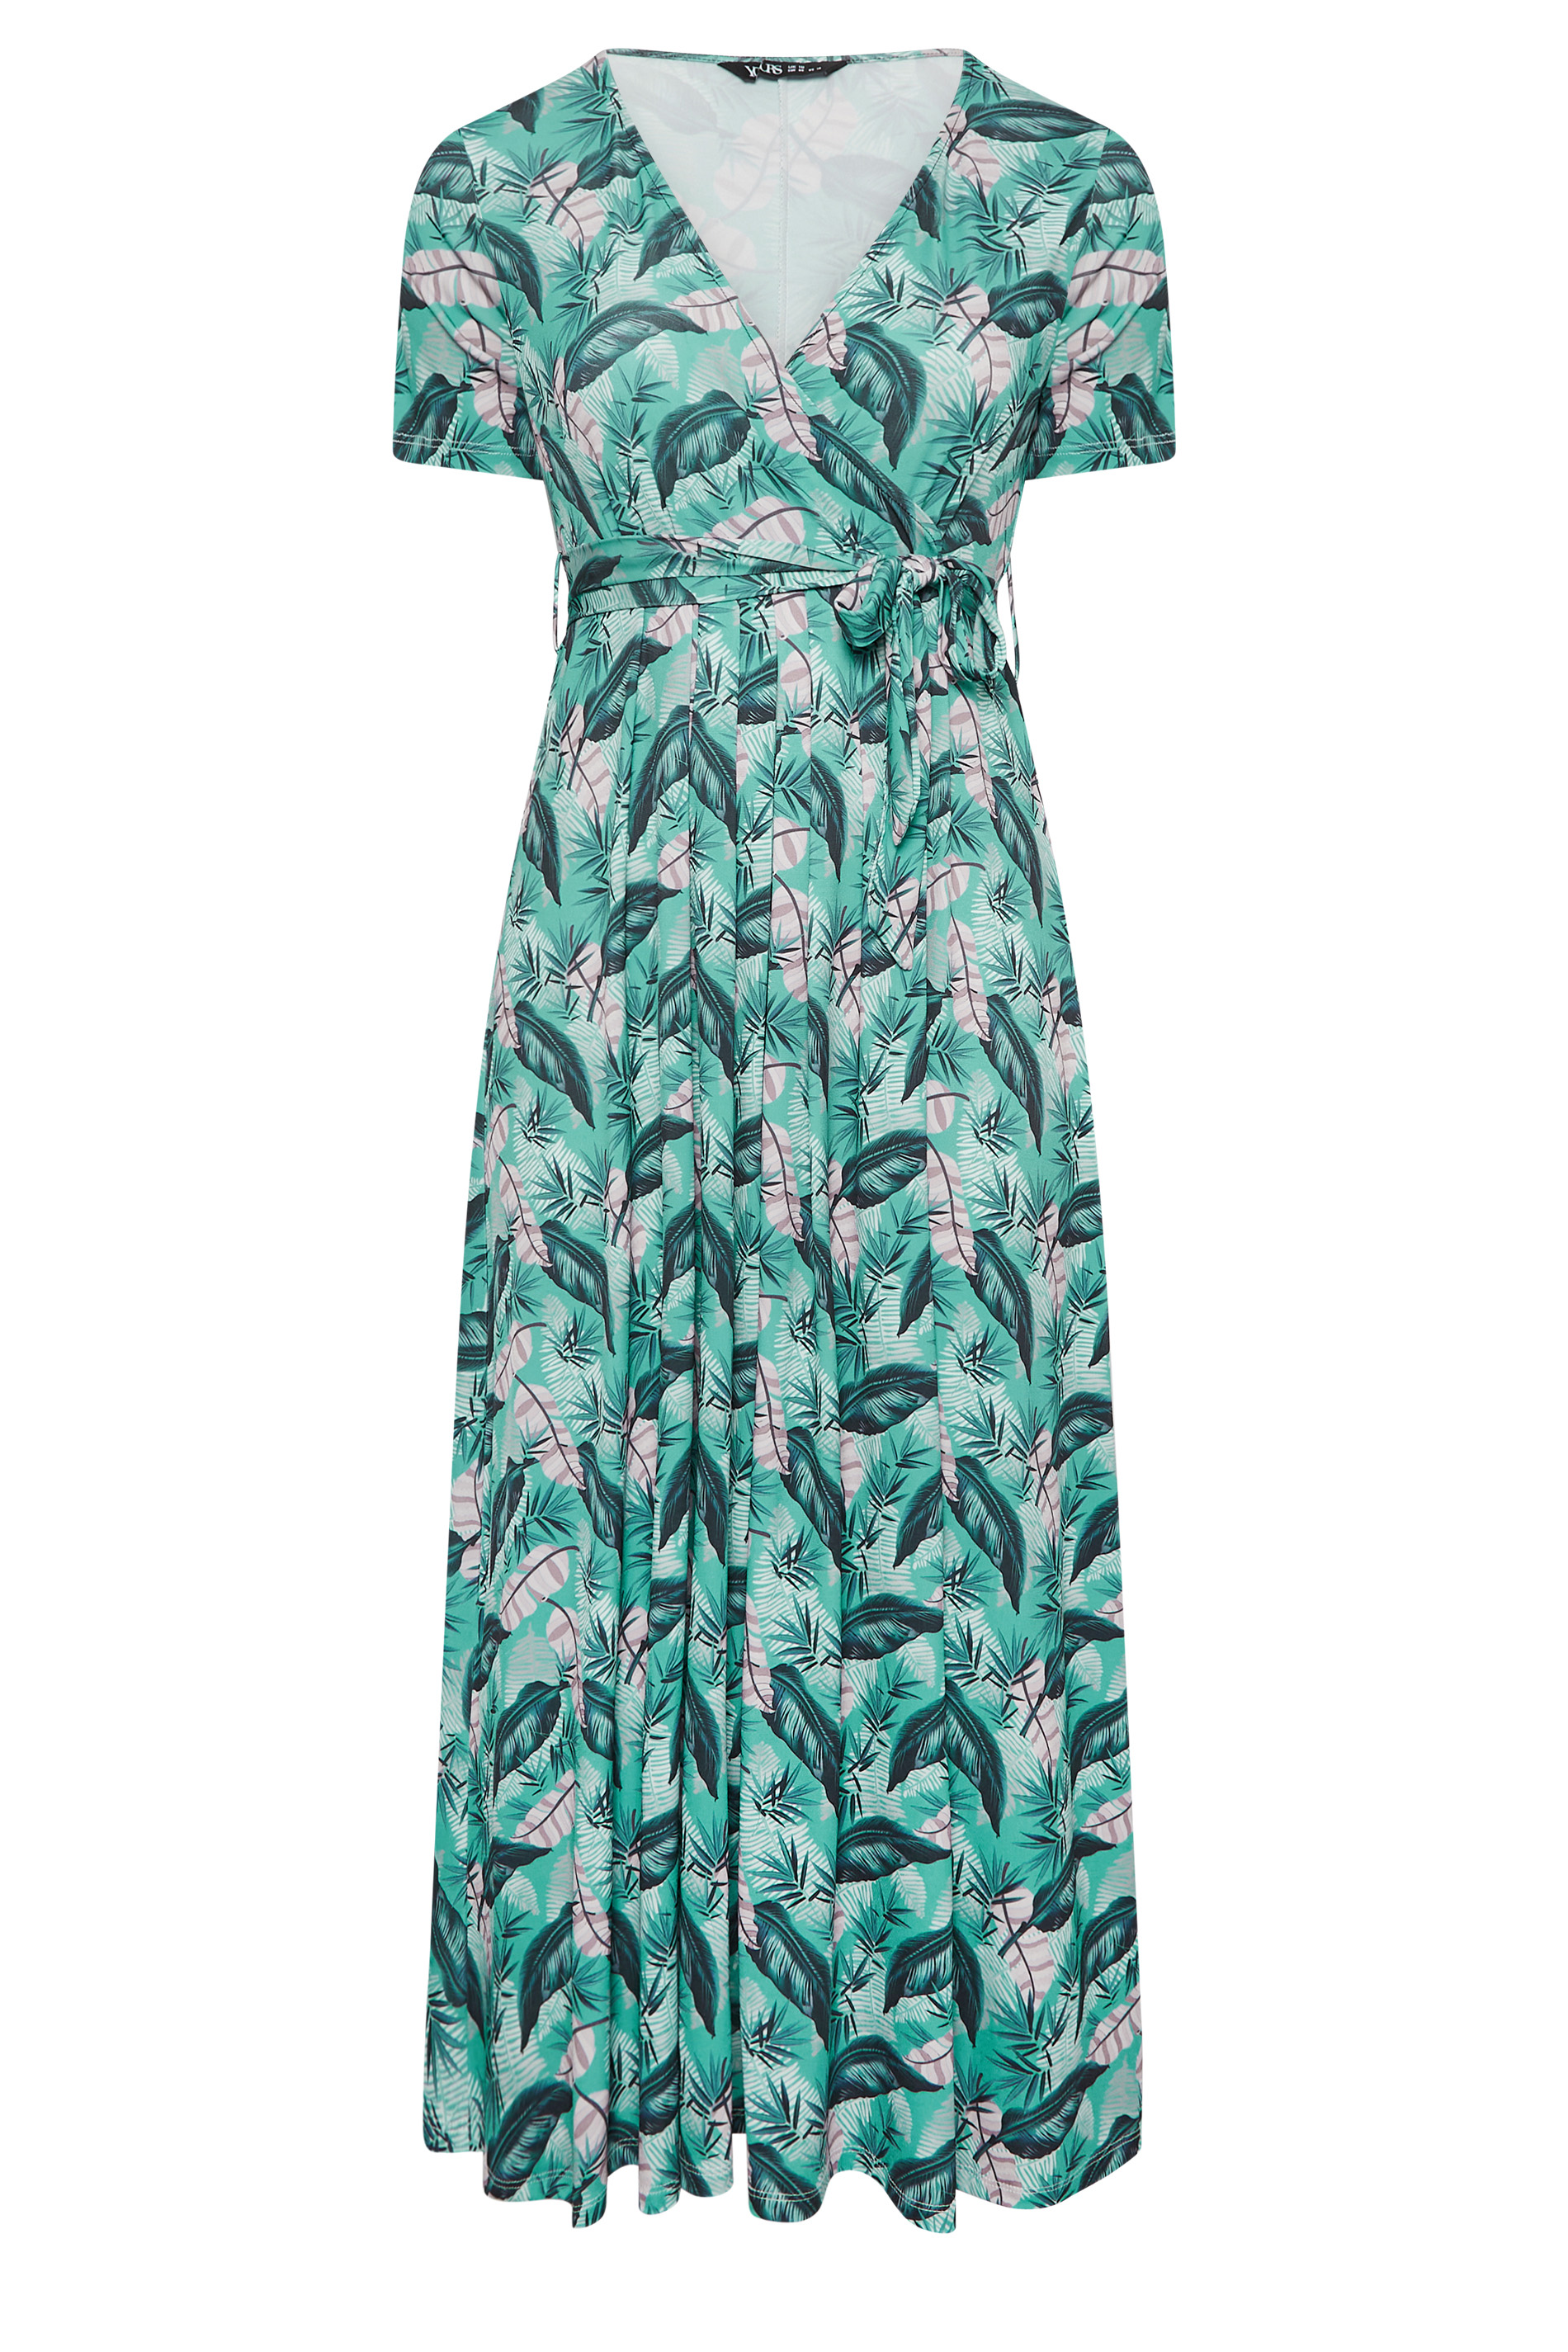 YOURS Curve Plus Size Light Blue Leaf Print Maxi Wrap Dress | Yours ...